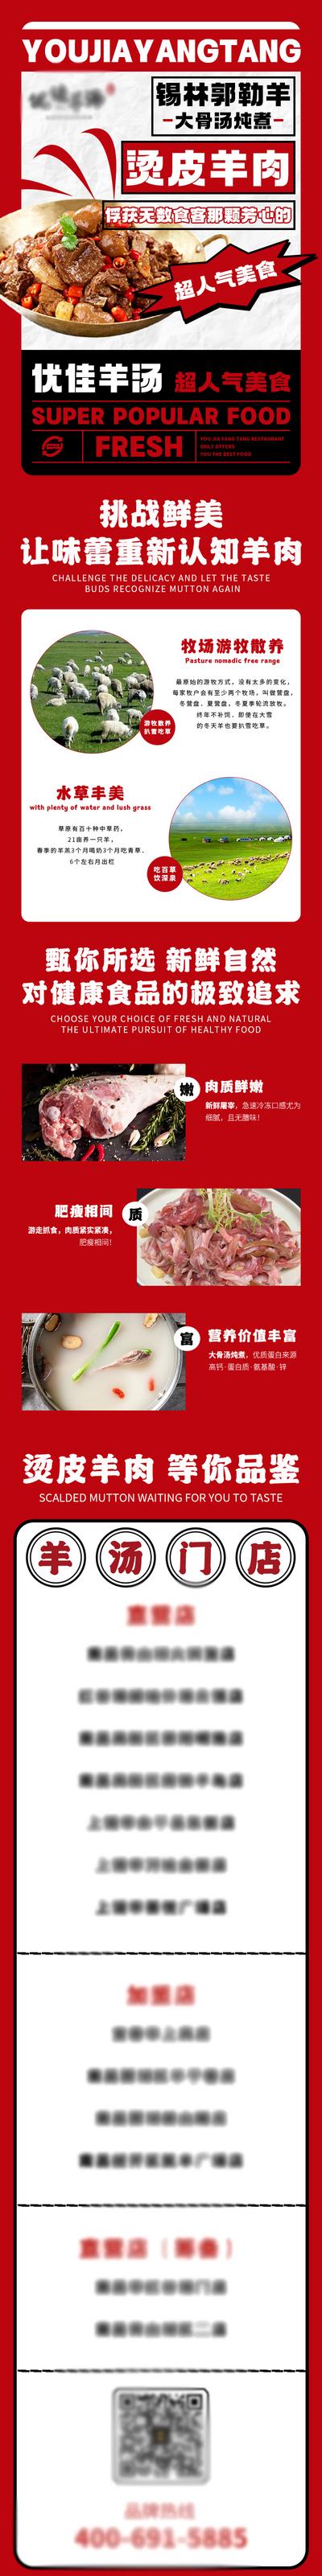 【南门网】专题设计 长图 美食 羊肉 菜品 餐饮 福利 活动